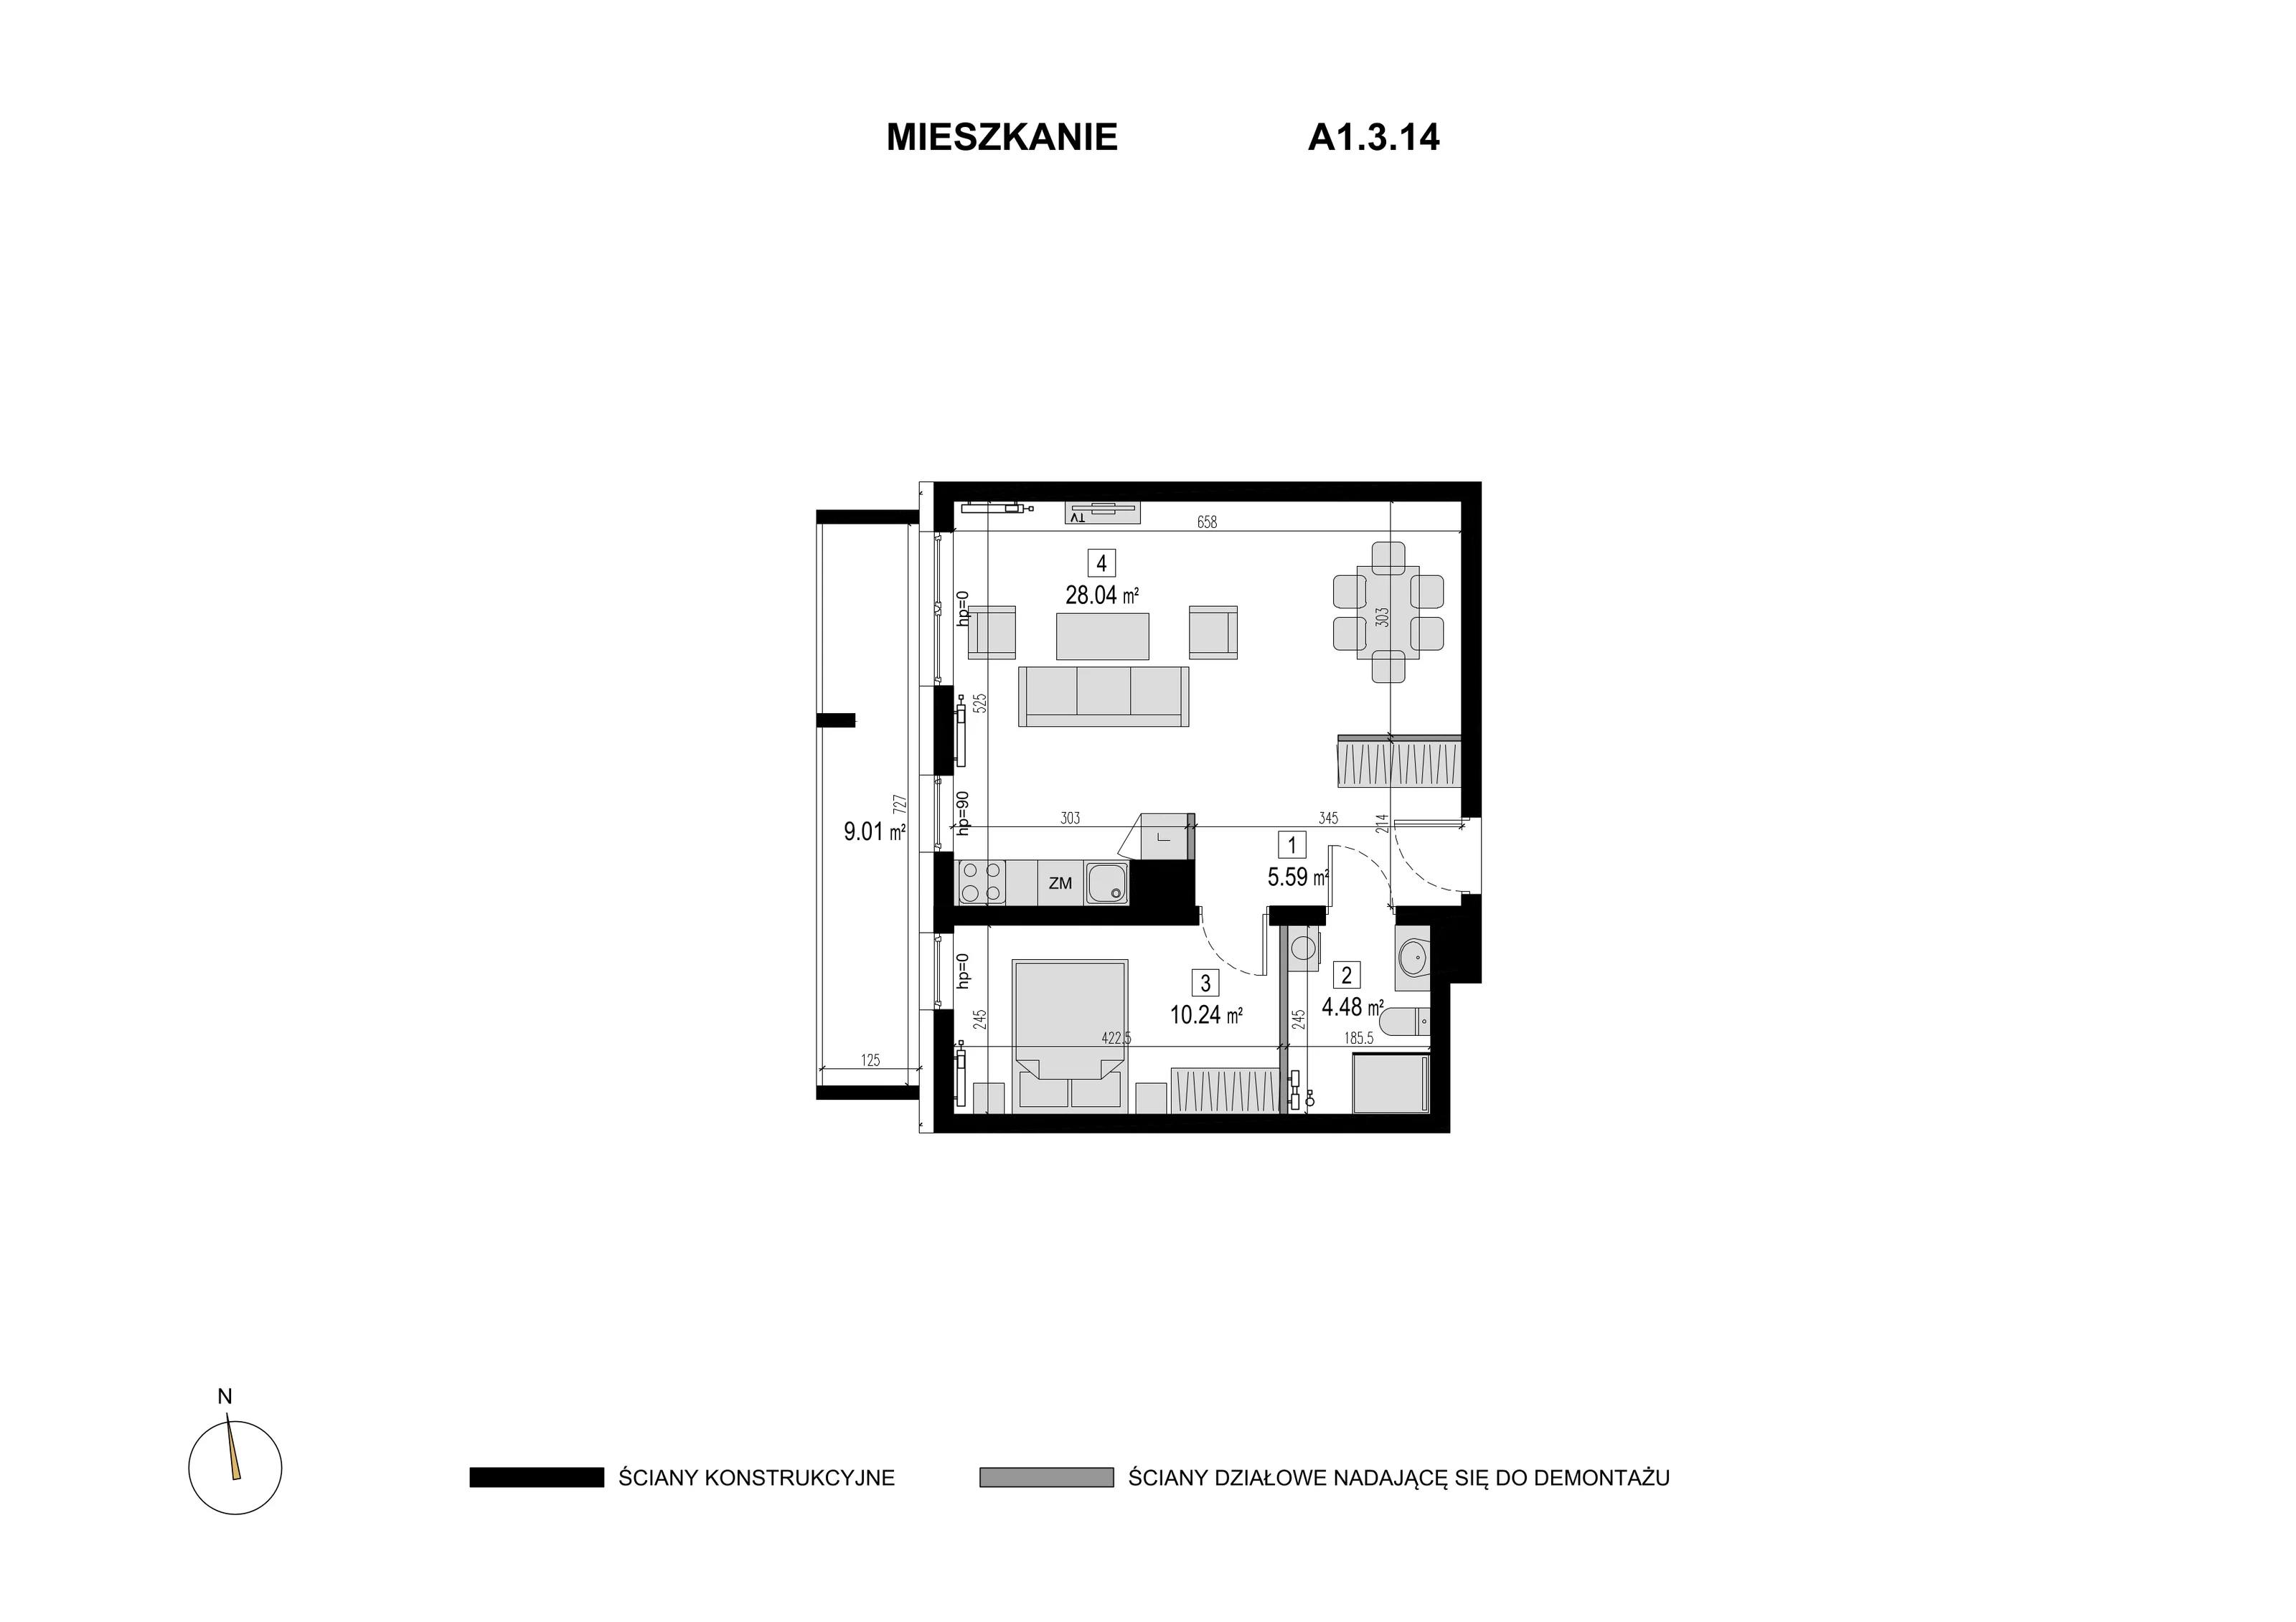 Mieszkanie 48,35 m², piętro 2, oferta nr A1.3.14, Novaforma, Legnica, ul. Chojnowska